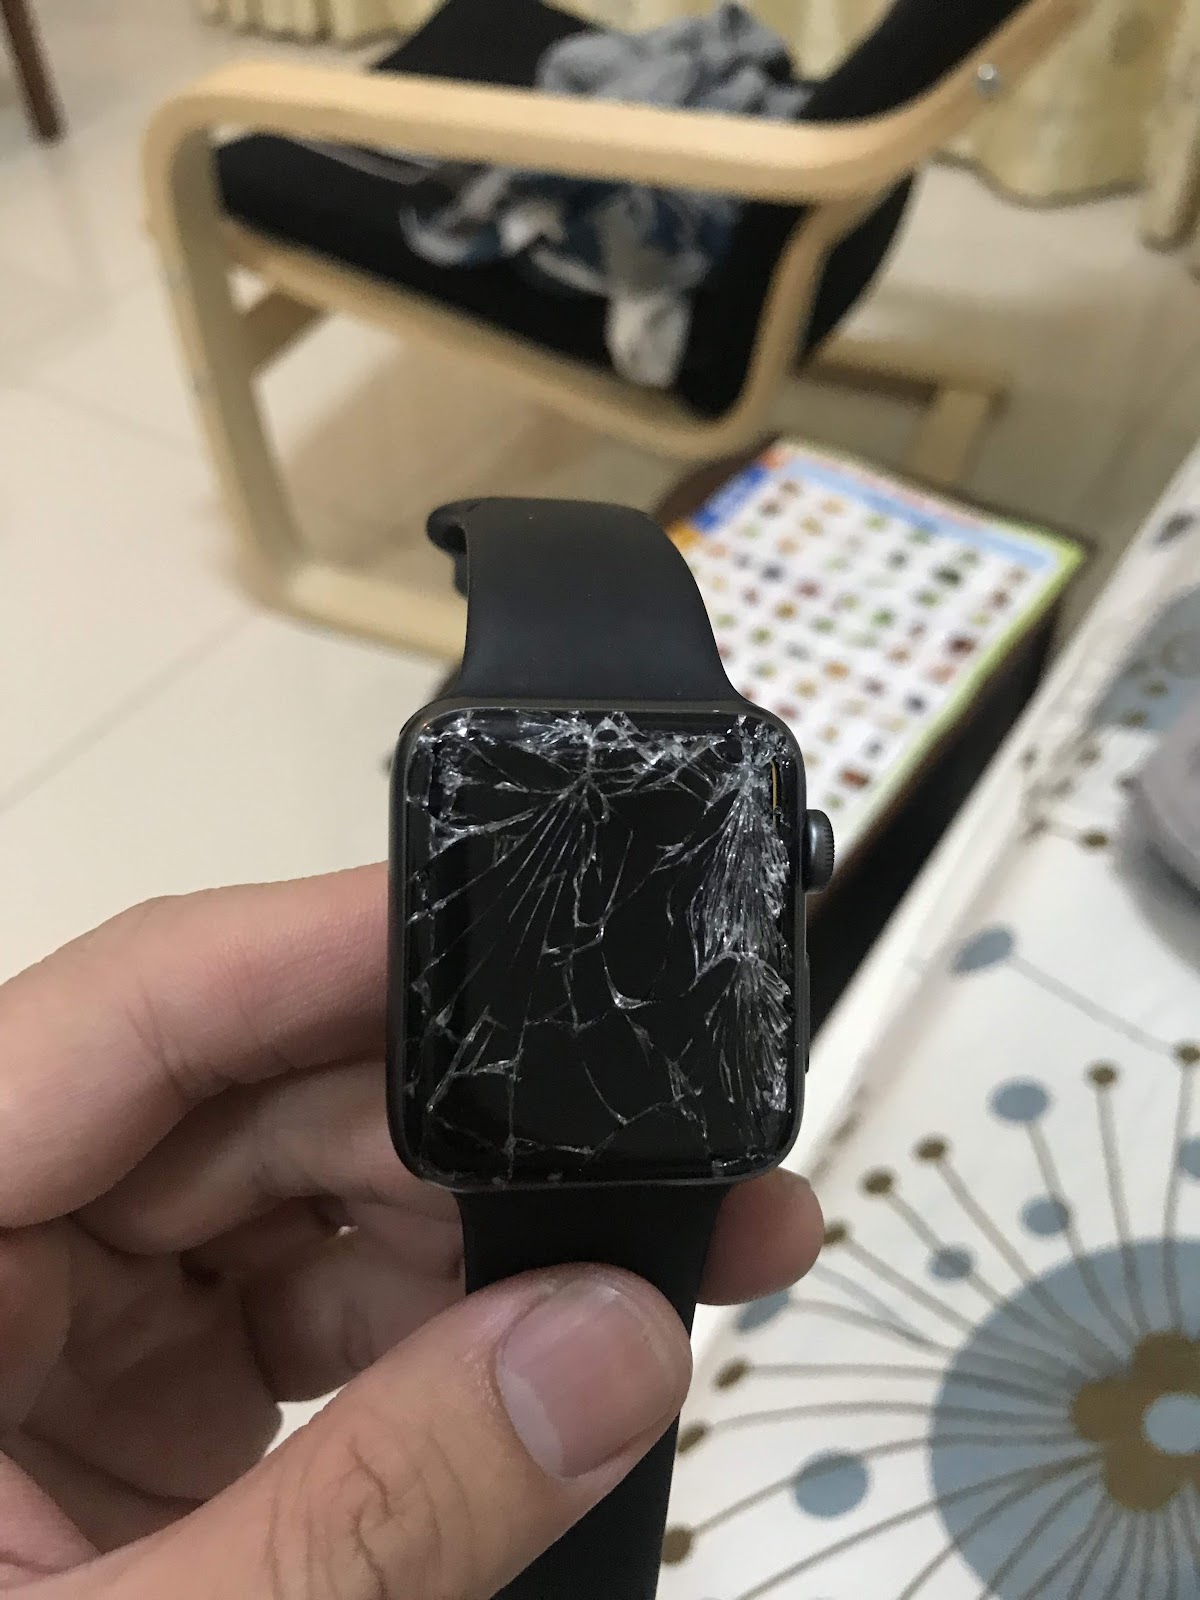 Thay mặt kính Apple Watch Series 2 Giá rẻ - Chất lượng